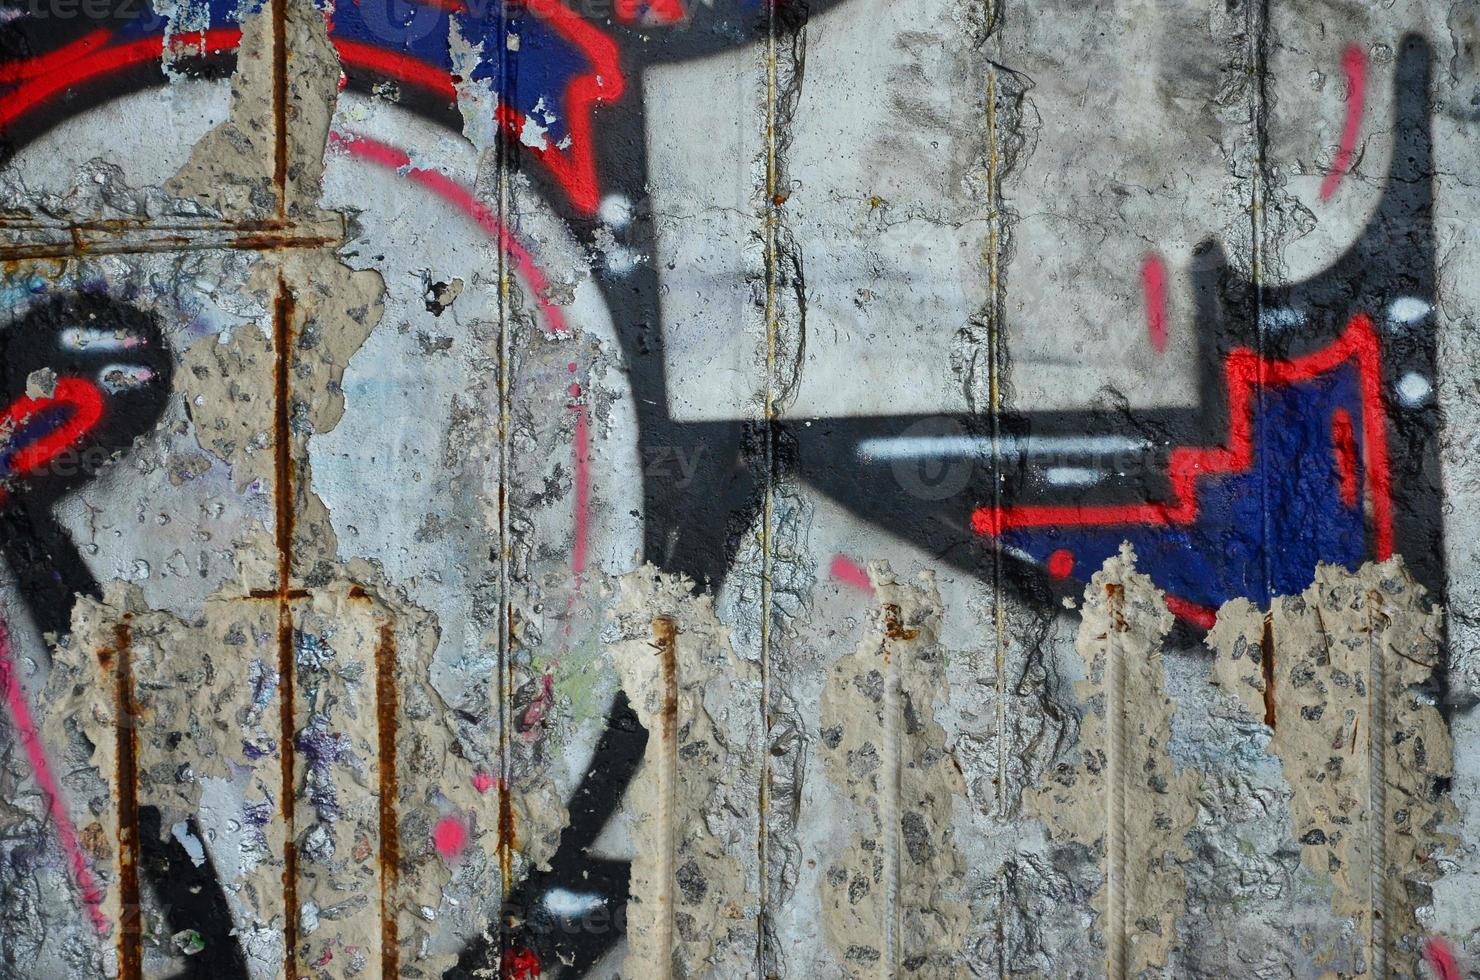 Textur eines Fragments der Wand mit Graffiti-Malerei, die darauf abgebildet ist. ein Bild einer Graffiti-Zeichnung als Foto zu Themen der Street Art und Graffiti-Kultur